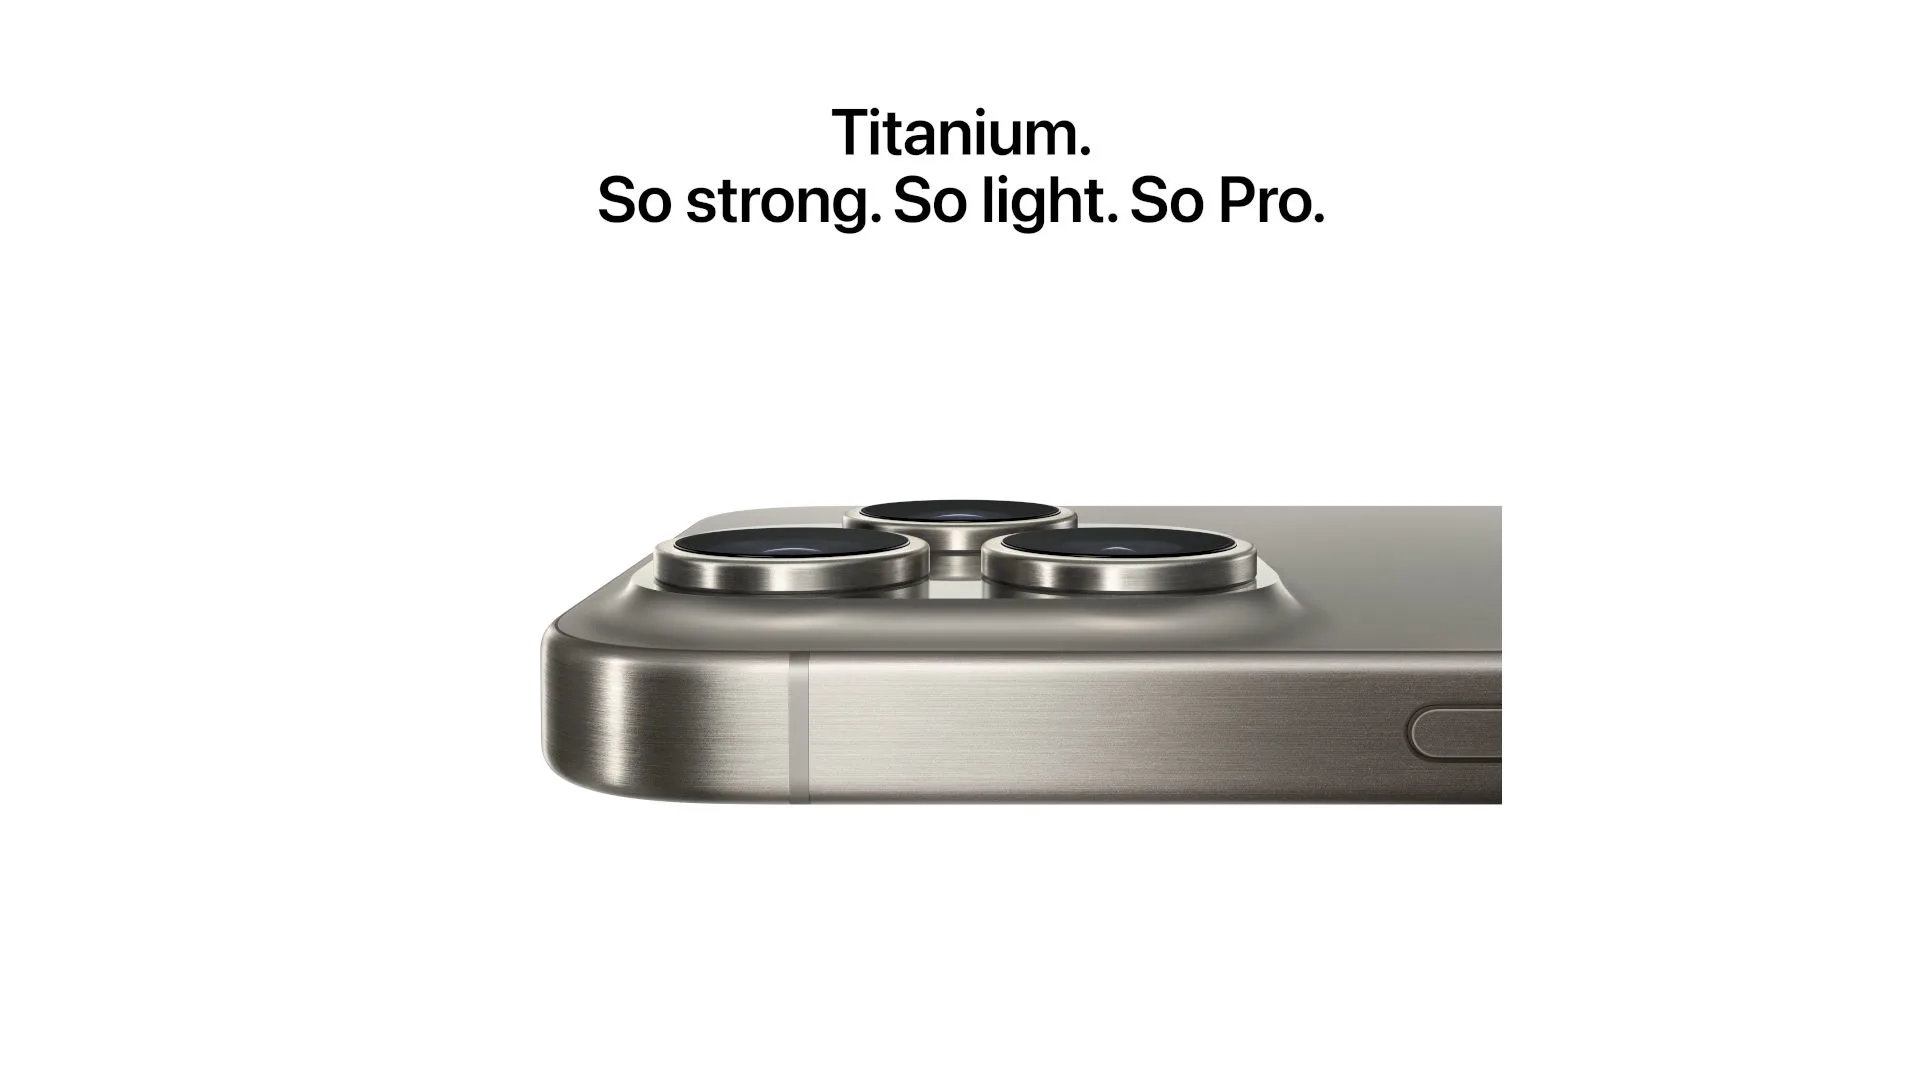 iPhone. Gesmeed uit titanium